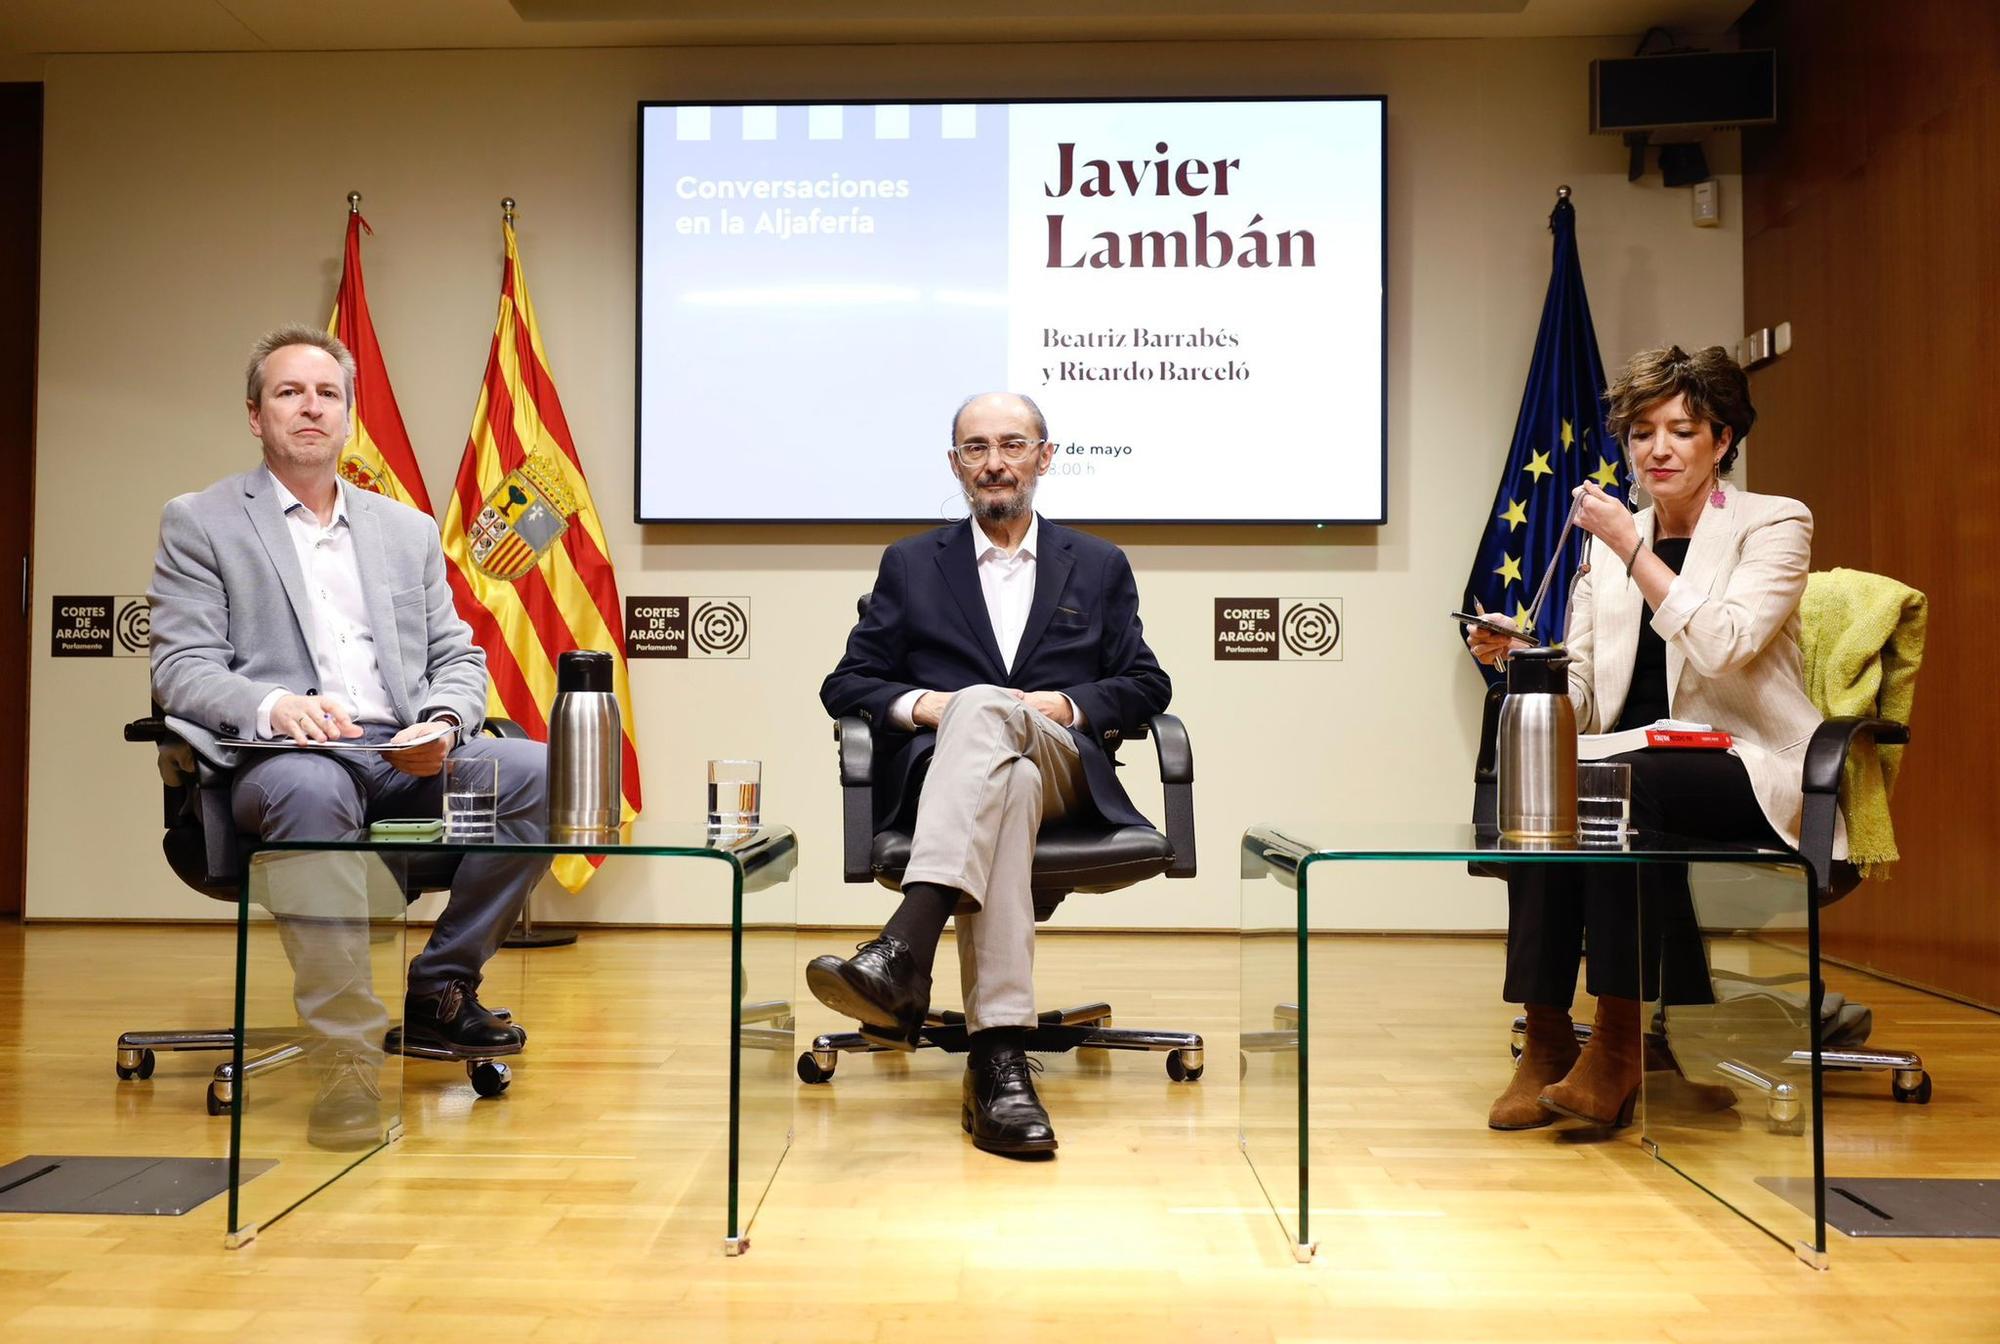 Javier Lambán conversa con Ricardo Barceló y Beatriz Barrabés